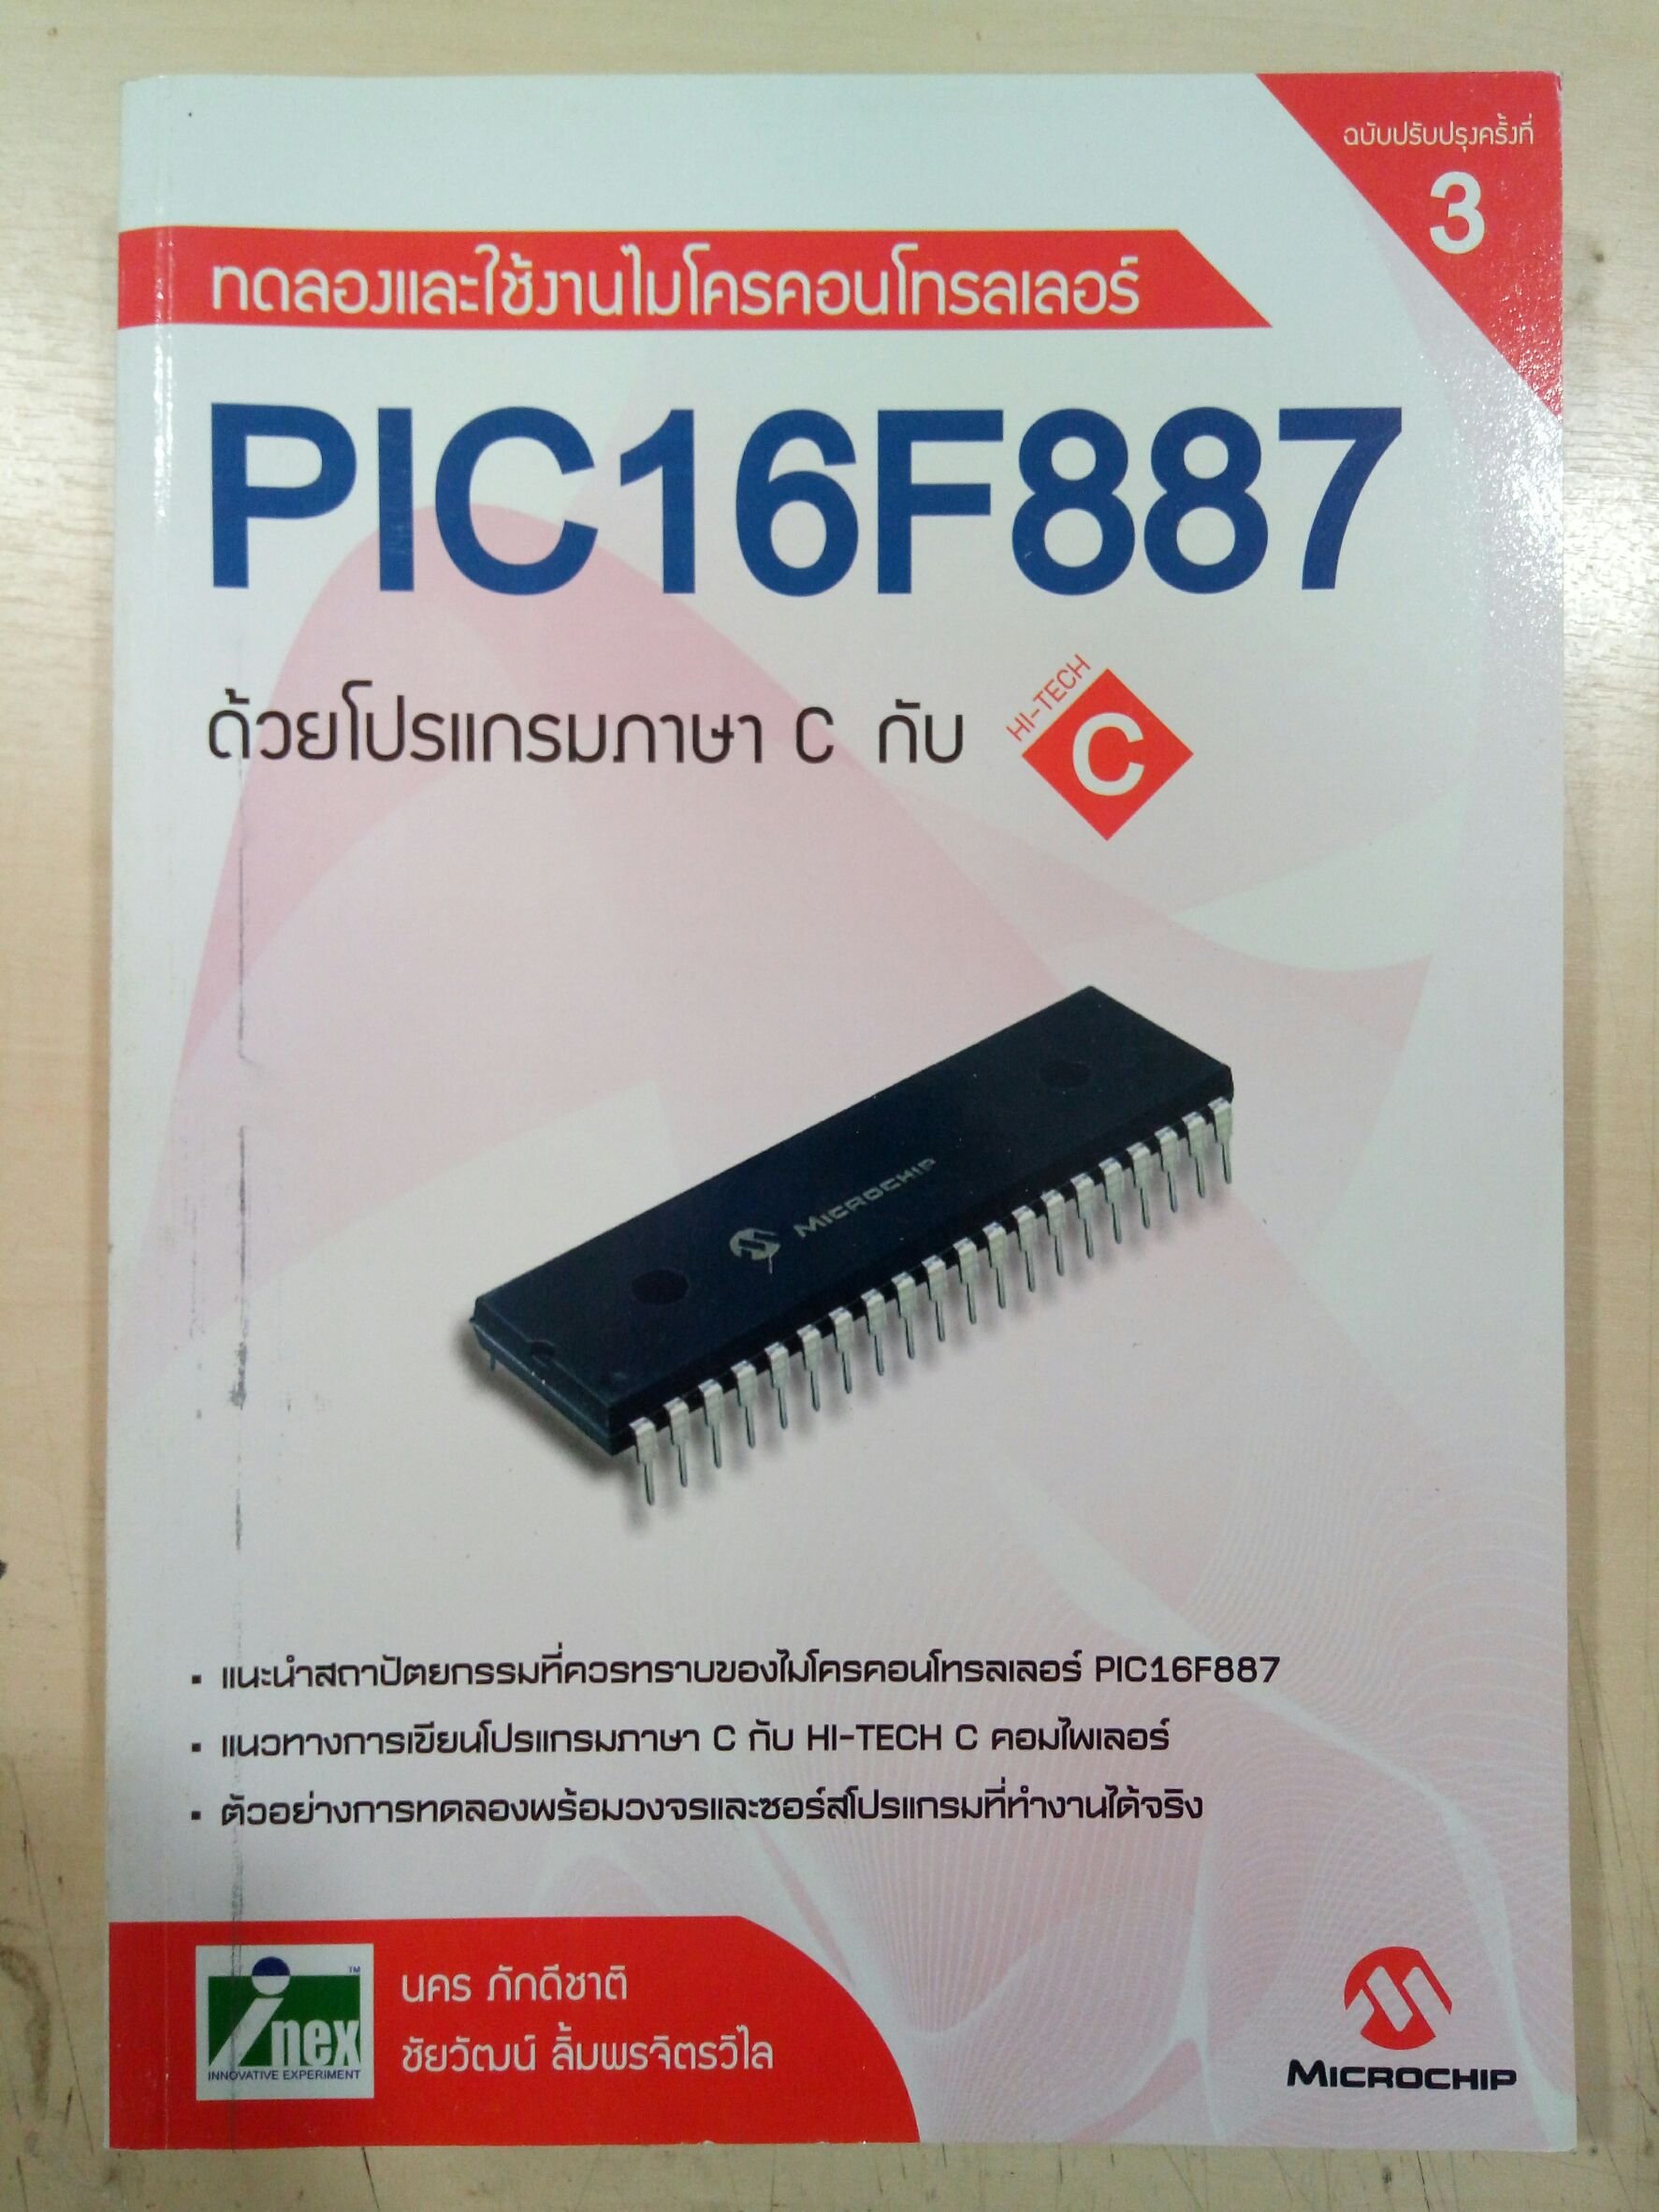 หนังสือทดลองและใช้งานไมโครคอนโทรลเลอร์ PIC16F887